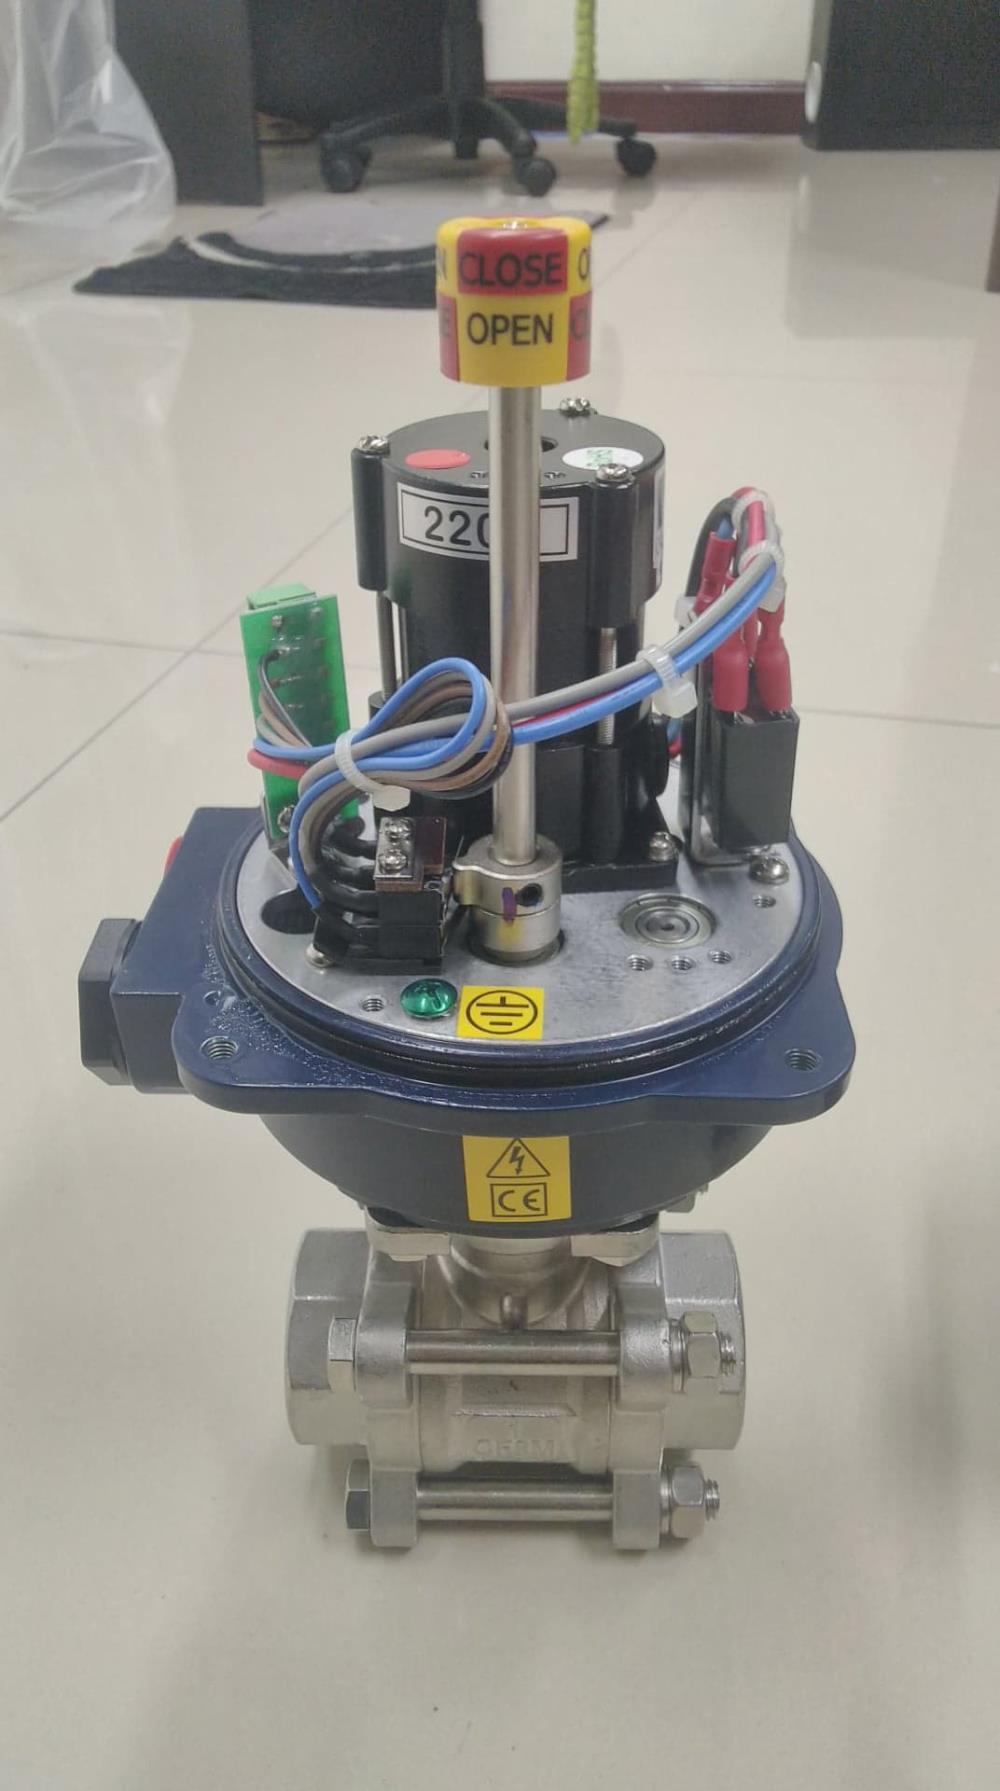 OM1-24DC+Ball valve size 2" Sunyeh Electric actuator หัวขับไฟฟ้า 24DC กับ บอลวาล์ว สแตนเลส ขนาด 2" ทนทาน ราคาถูก ส่งฟรีทั่วประเทศ